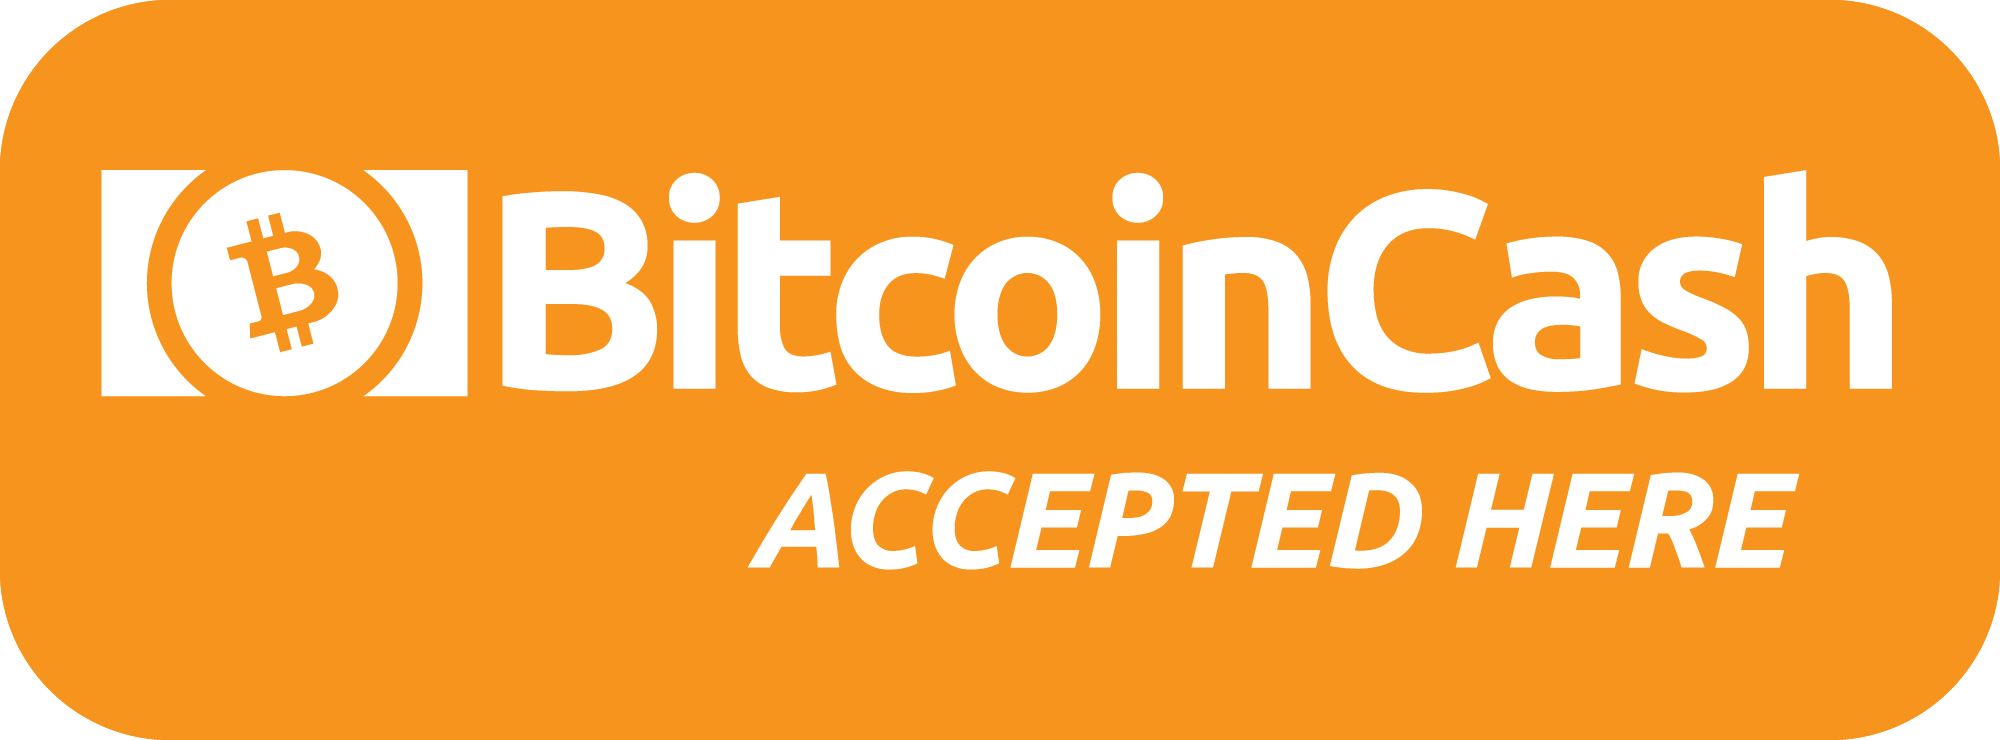 Cash Accepted Logo - Logos / Graphics - Bitcoin Cash